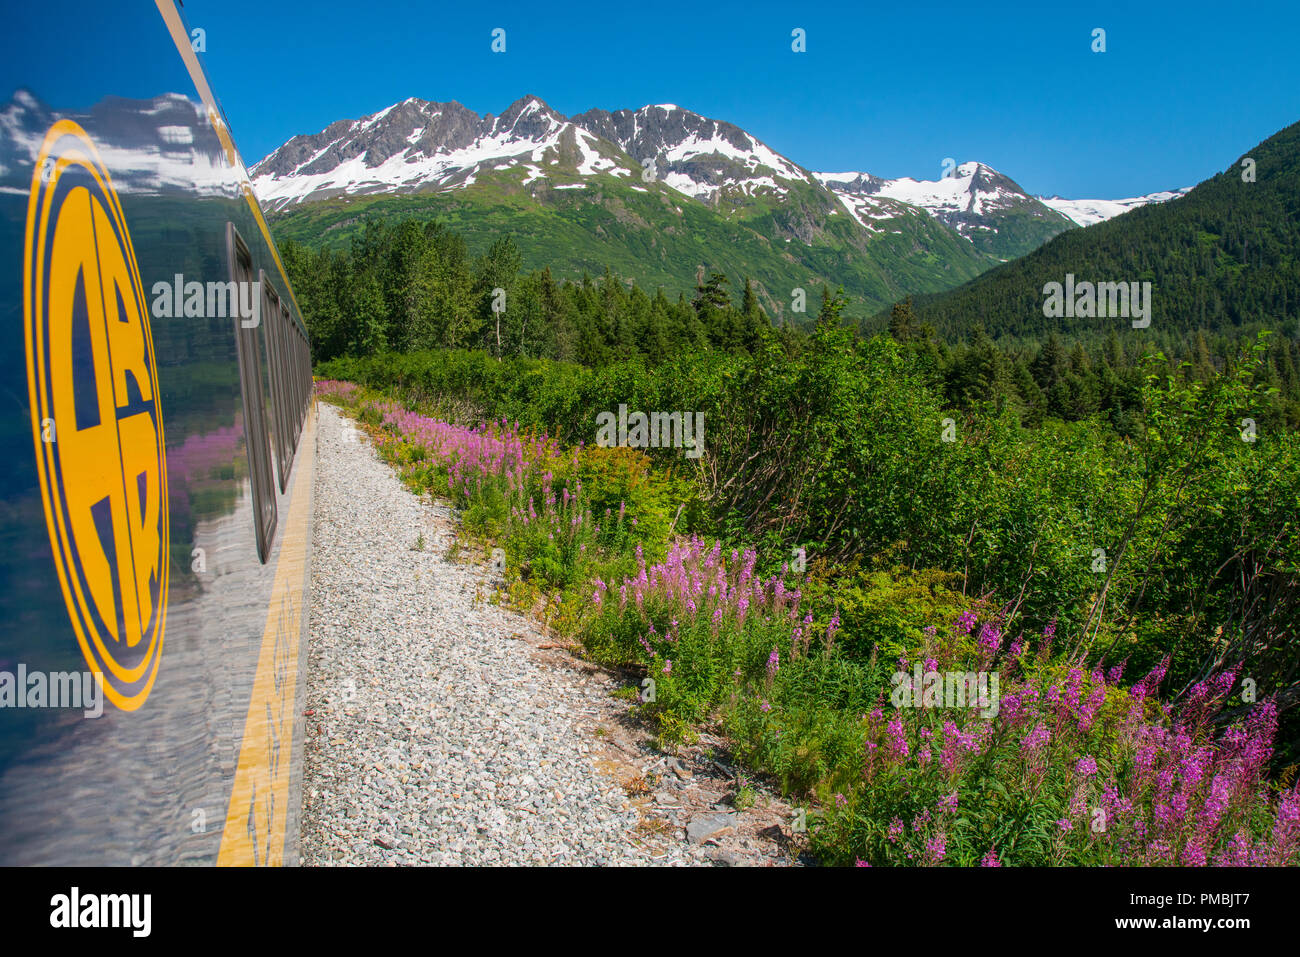 Alaska Railroad Glacier Discovery viaggio in treno, Chugach National Forest, Alaska. Foto Stock